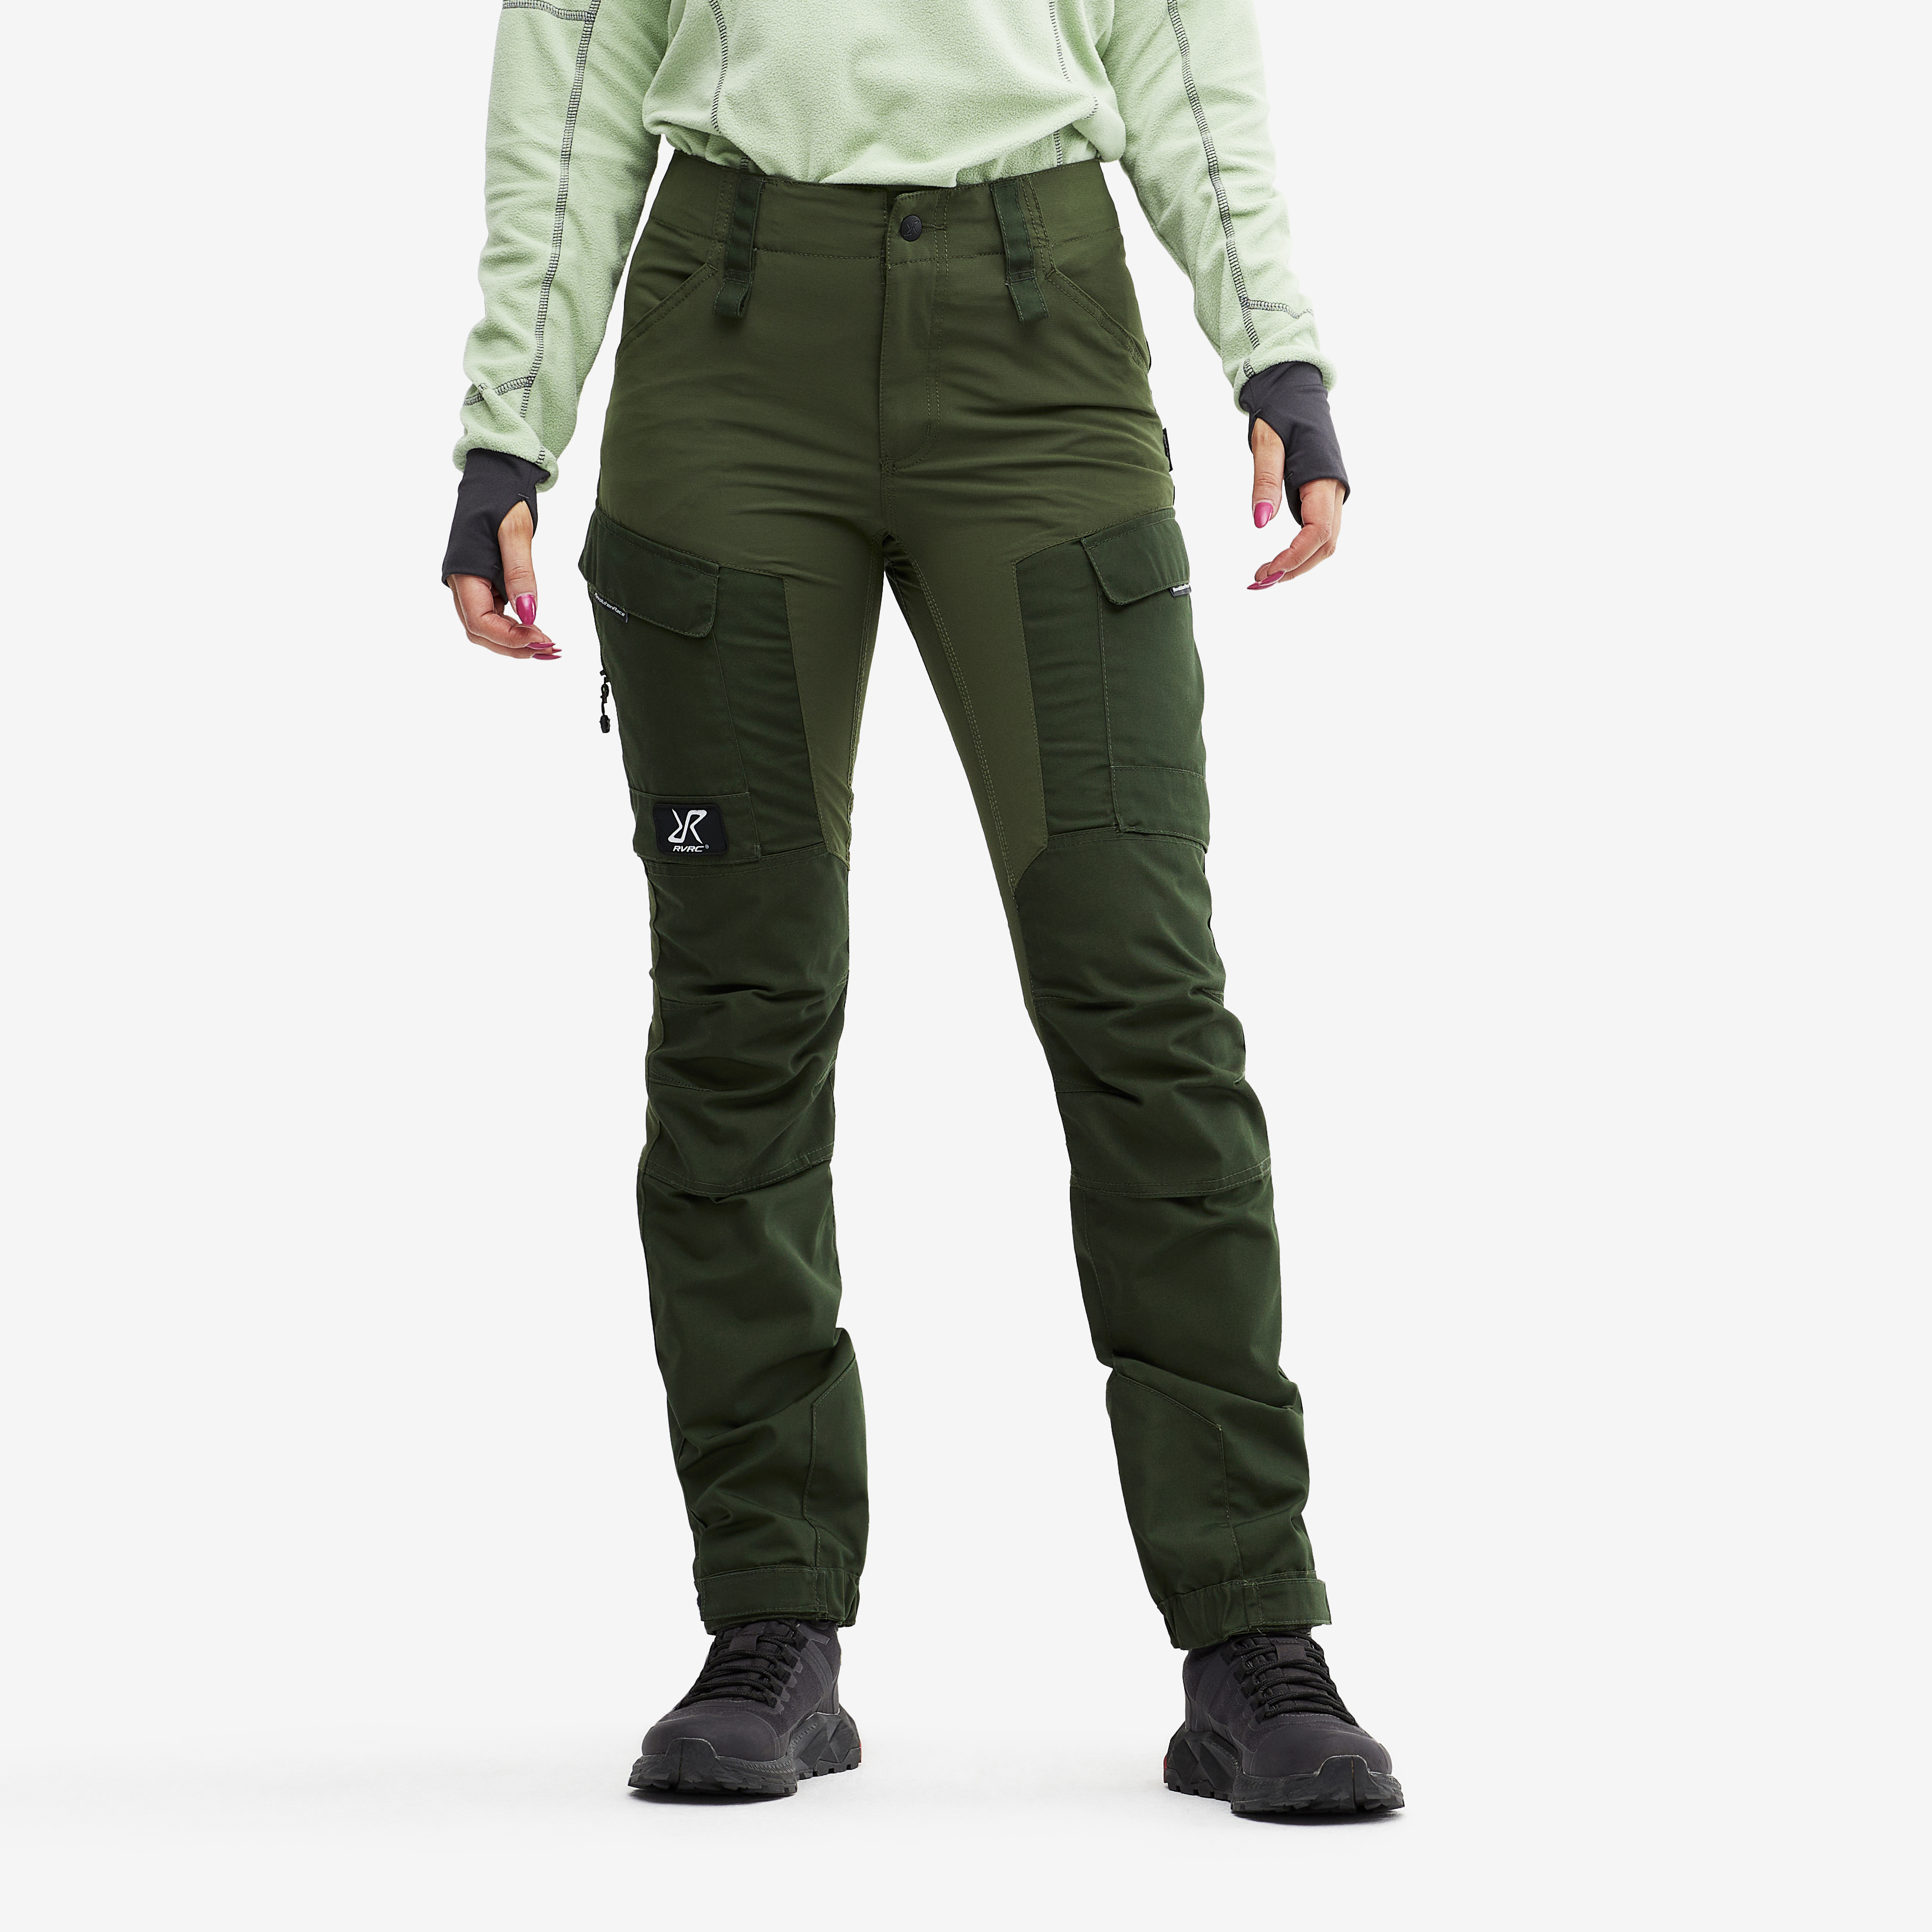 RVRC GP outdoor broek voor dames in groen